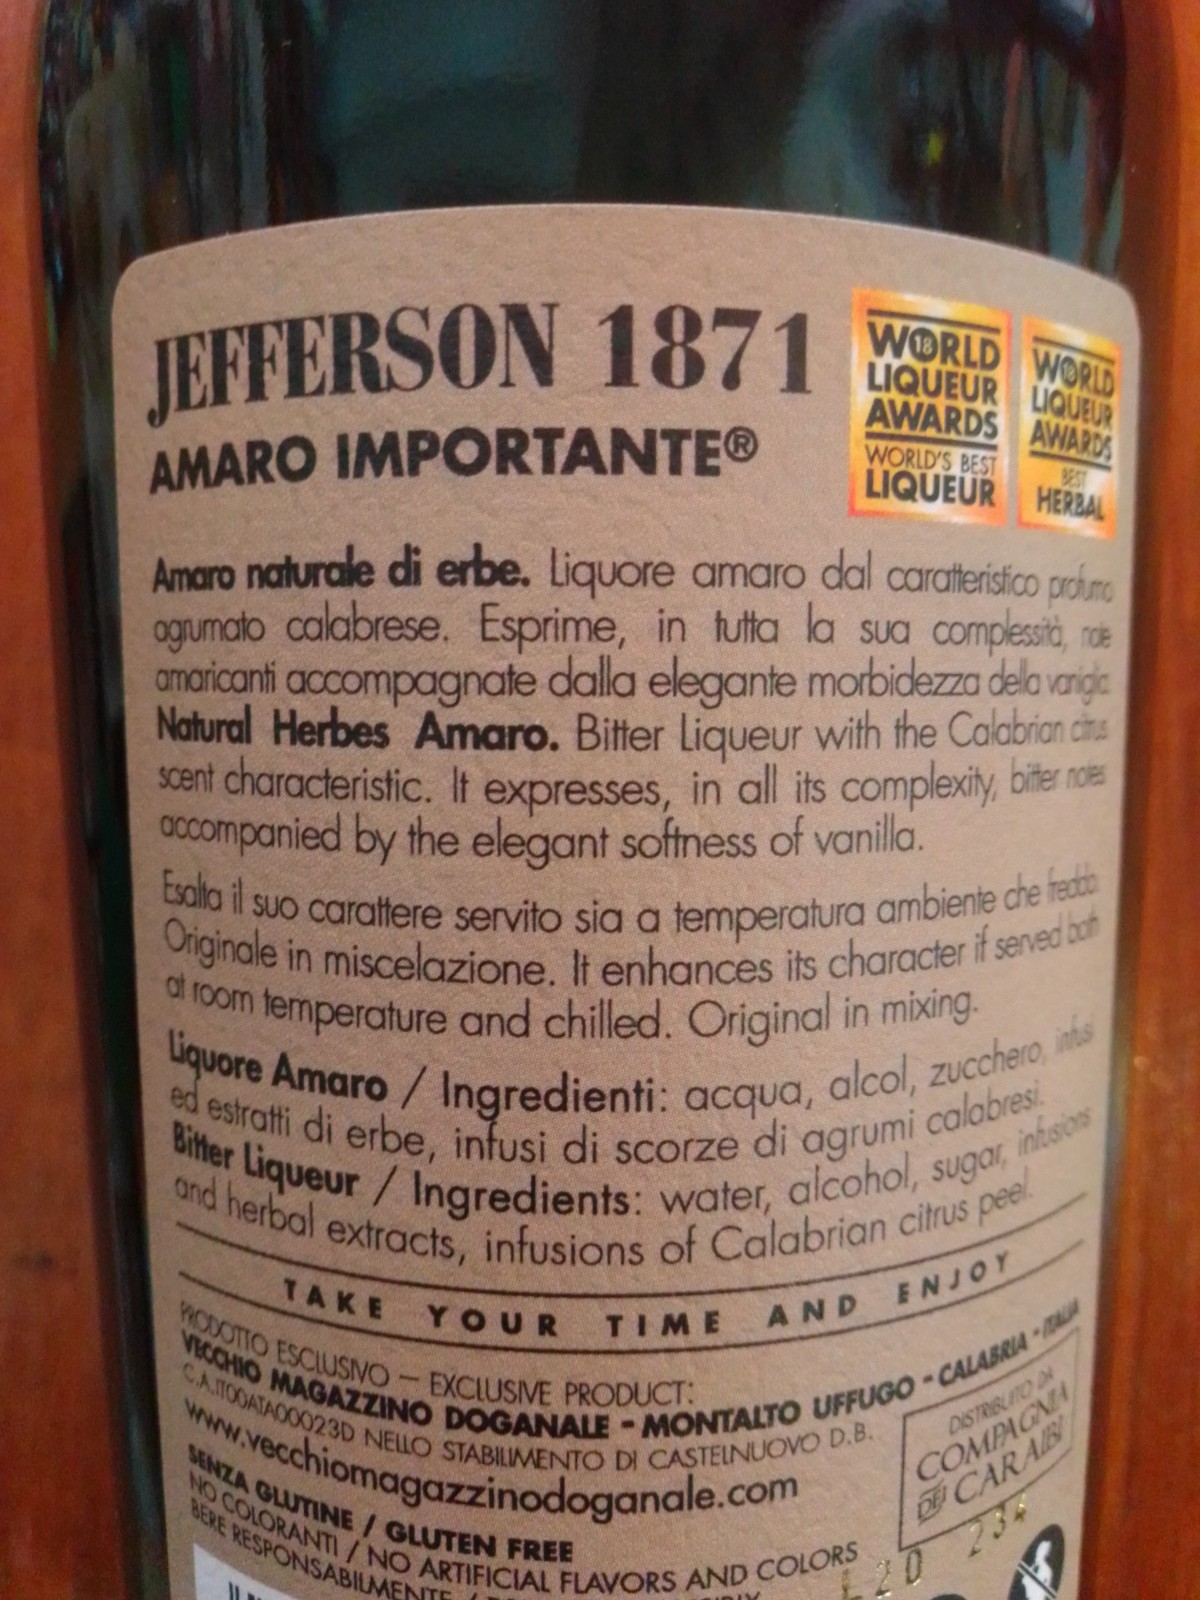 Jefferson - Amaro Importante - Vendita OnLine Specialità Calabresi